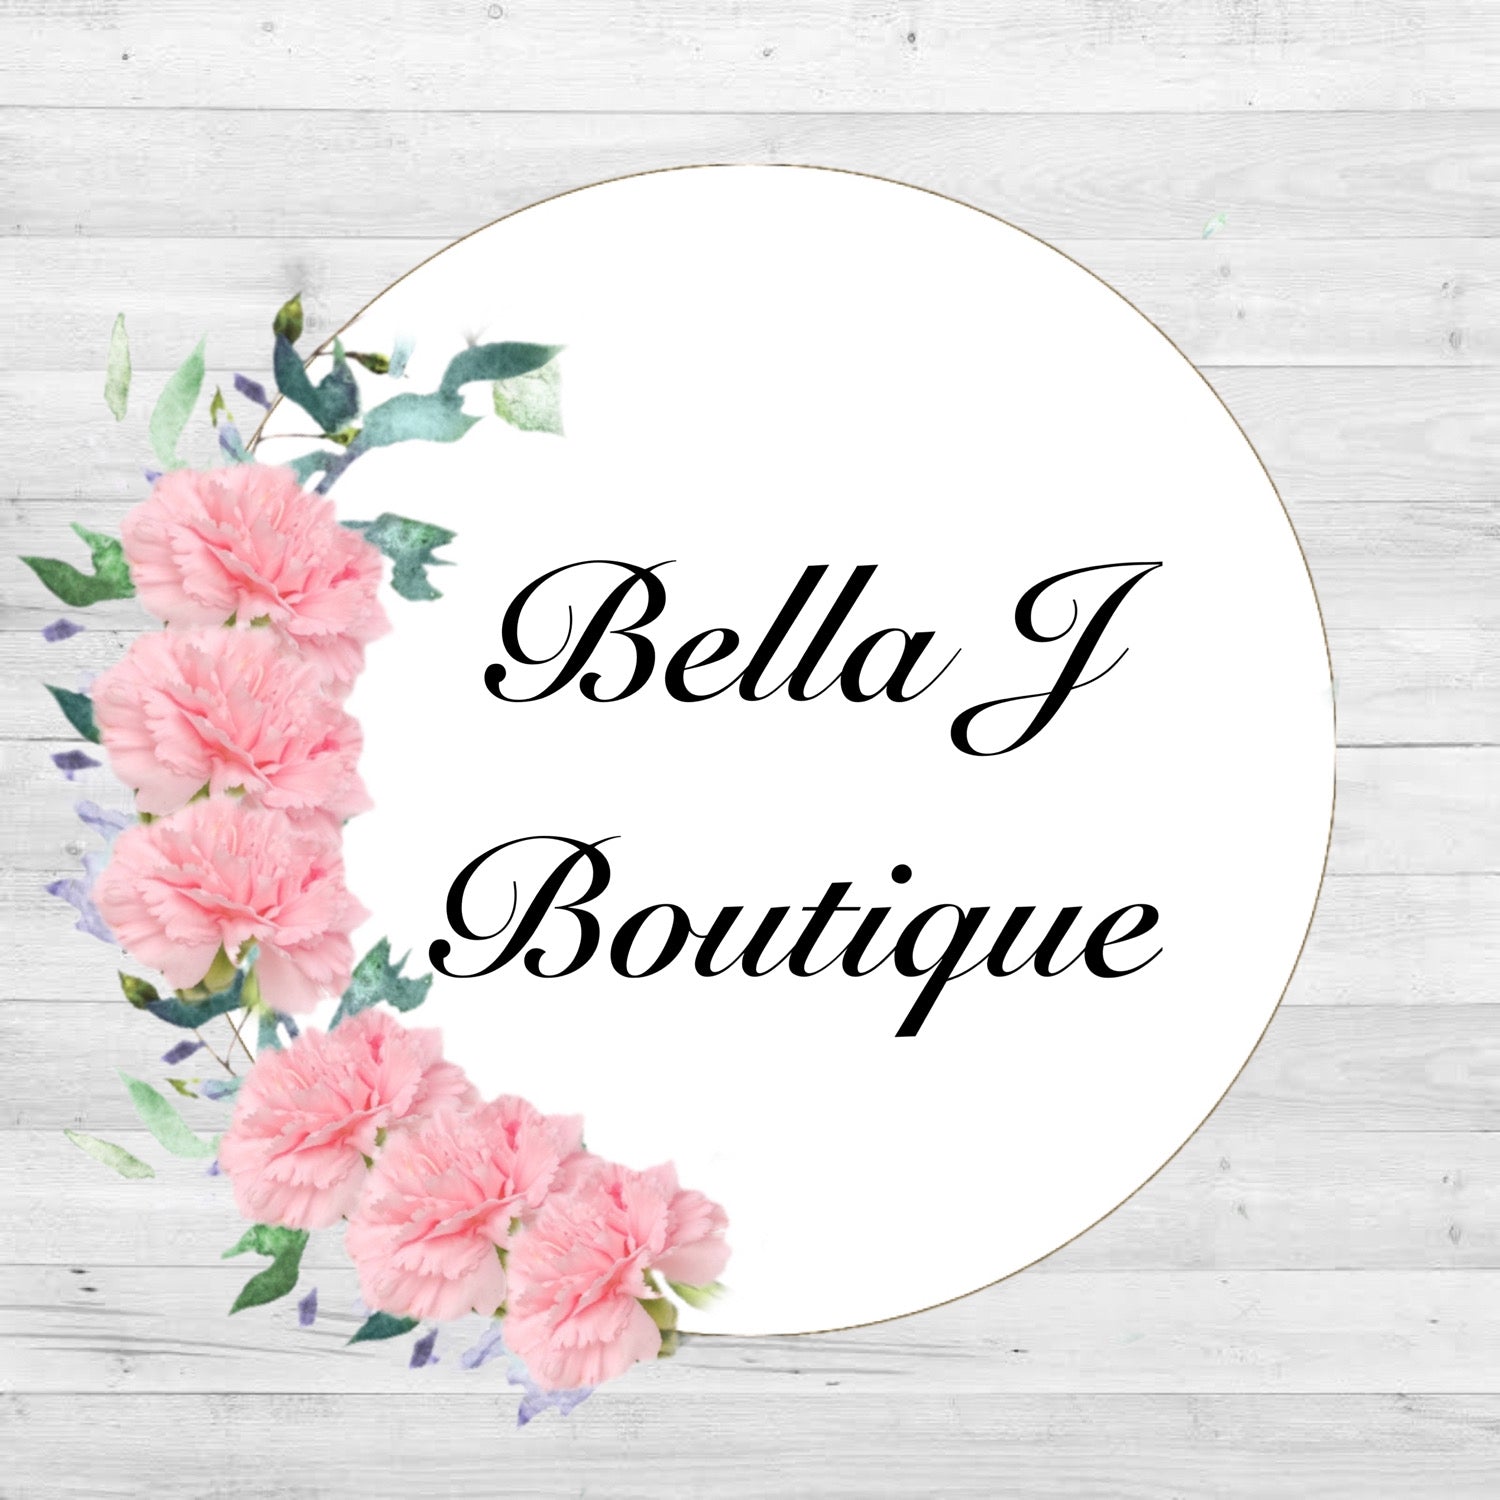 Bella J Boutique